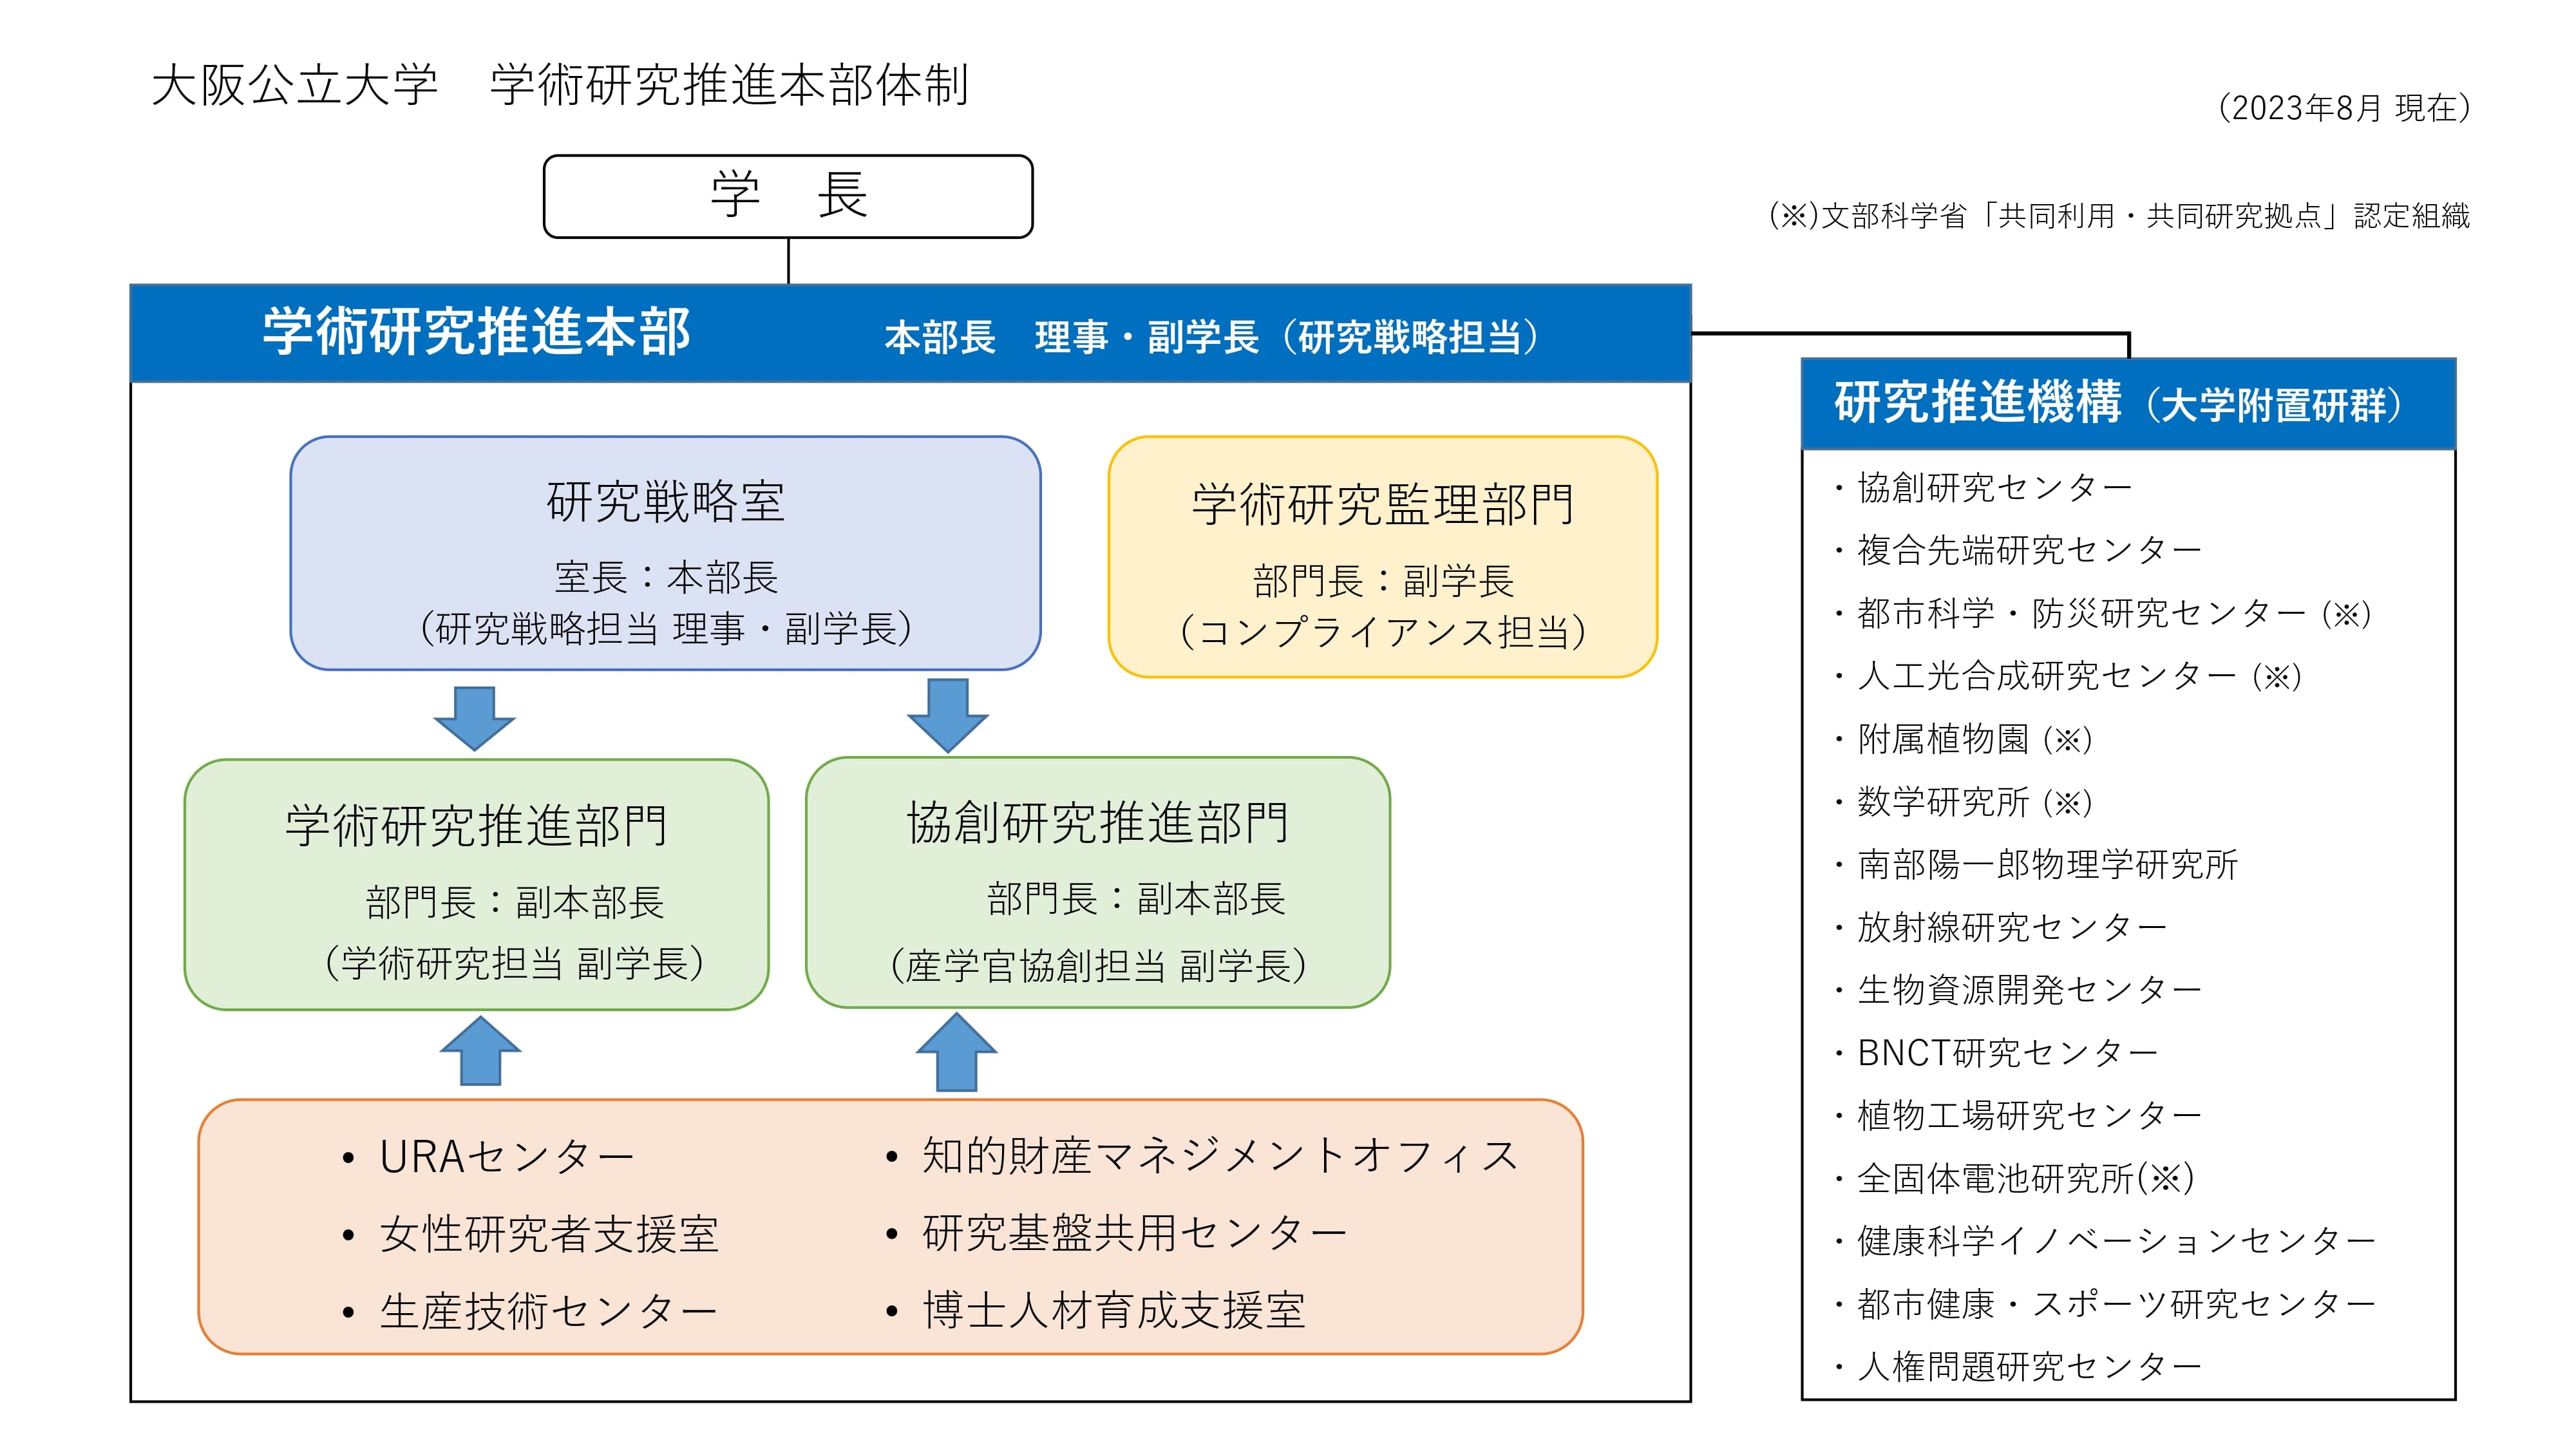 大阪公立大学学術研究推進本部体制の組織図